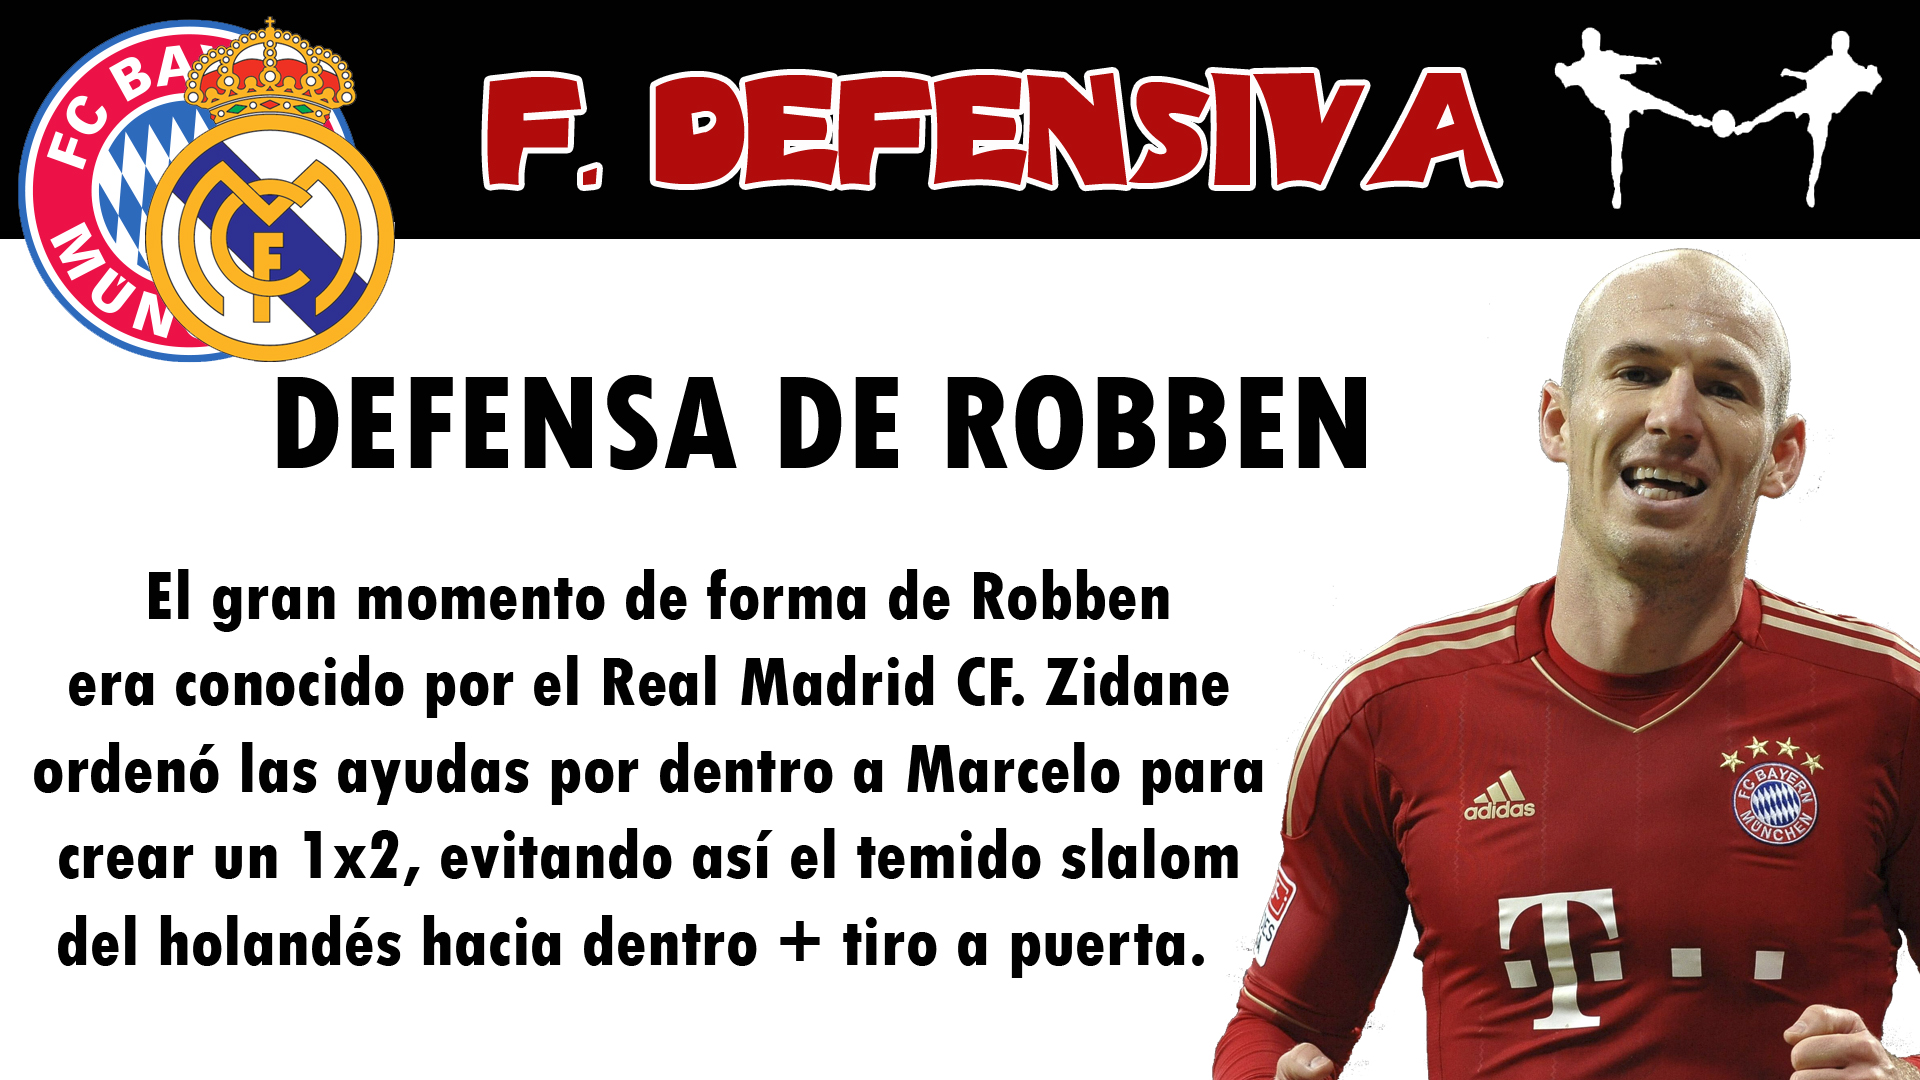 futbolcarrasco defensa de robben real madrid champions league zidane